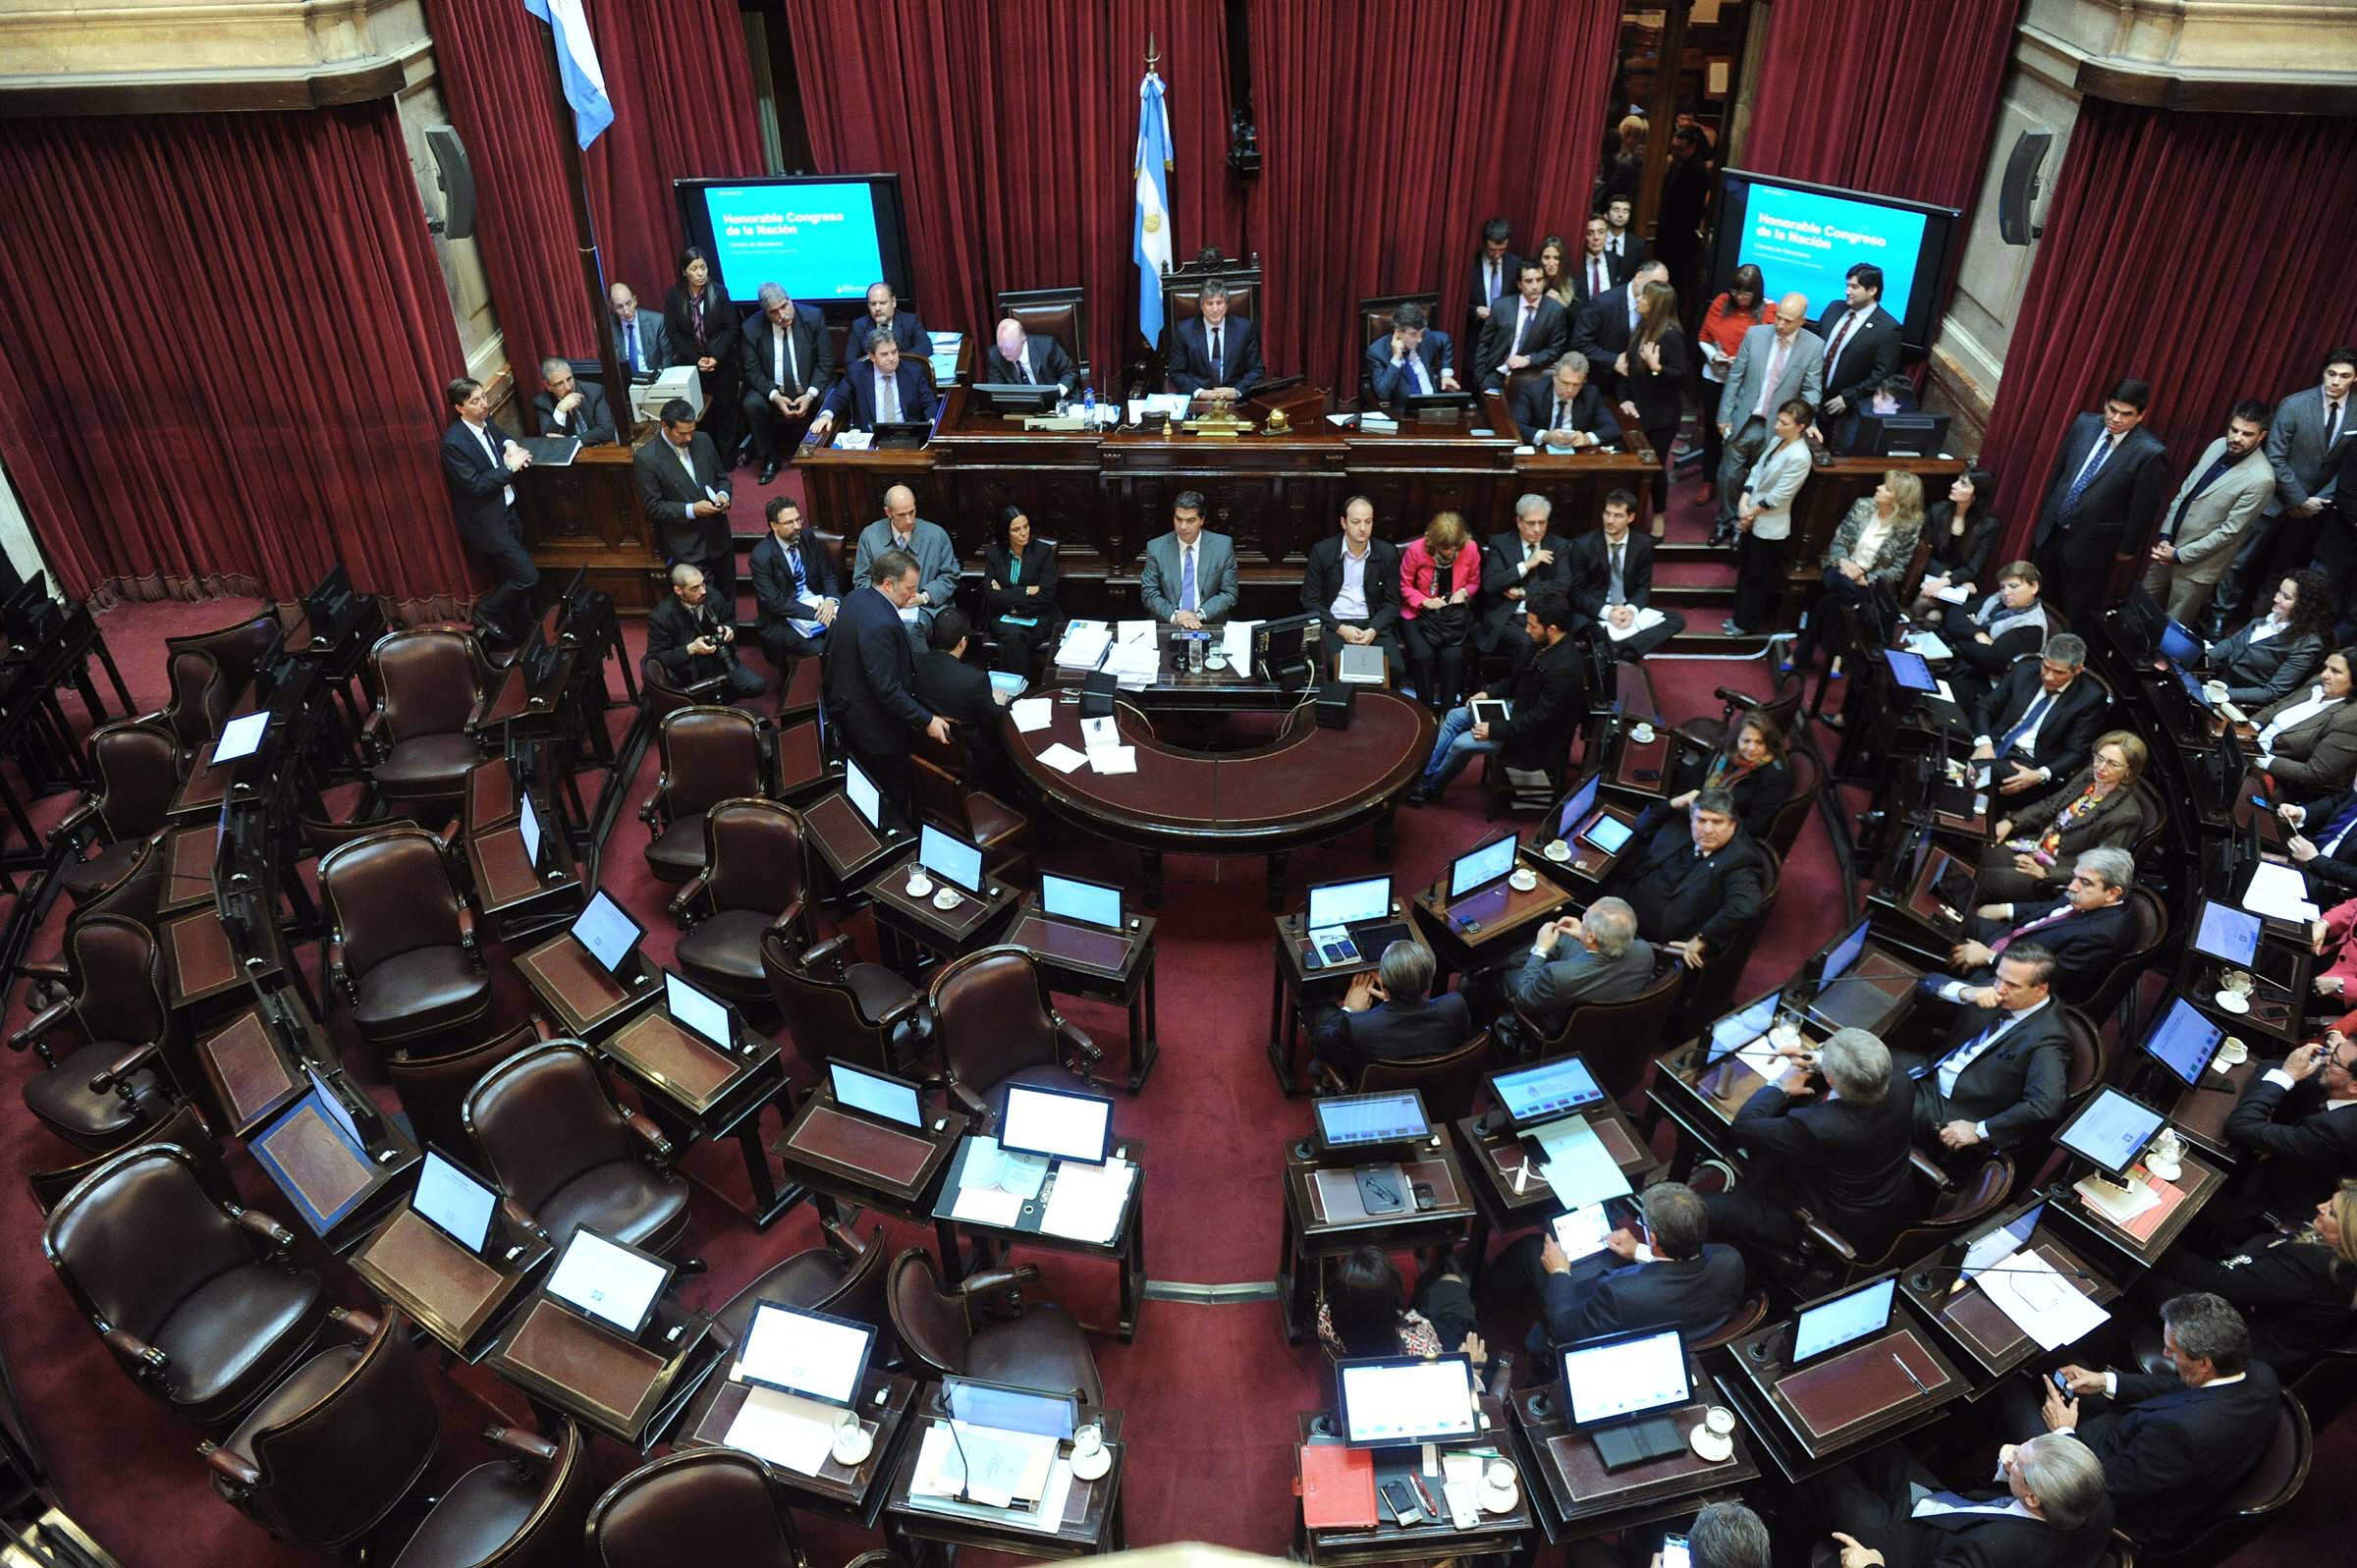 La última reforma de la ley de Inteligencia argentina fue sancionada en 2001.